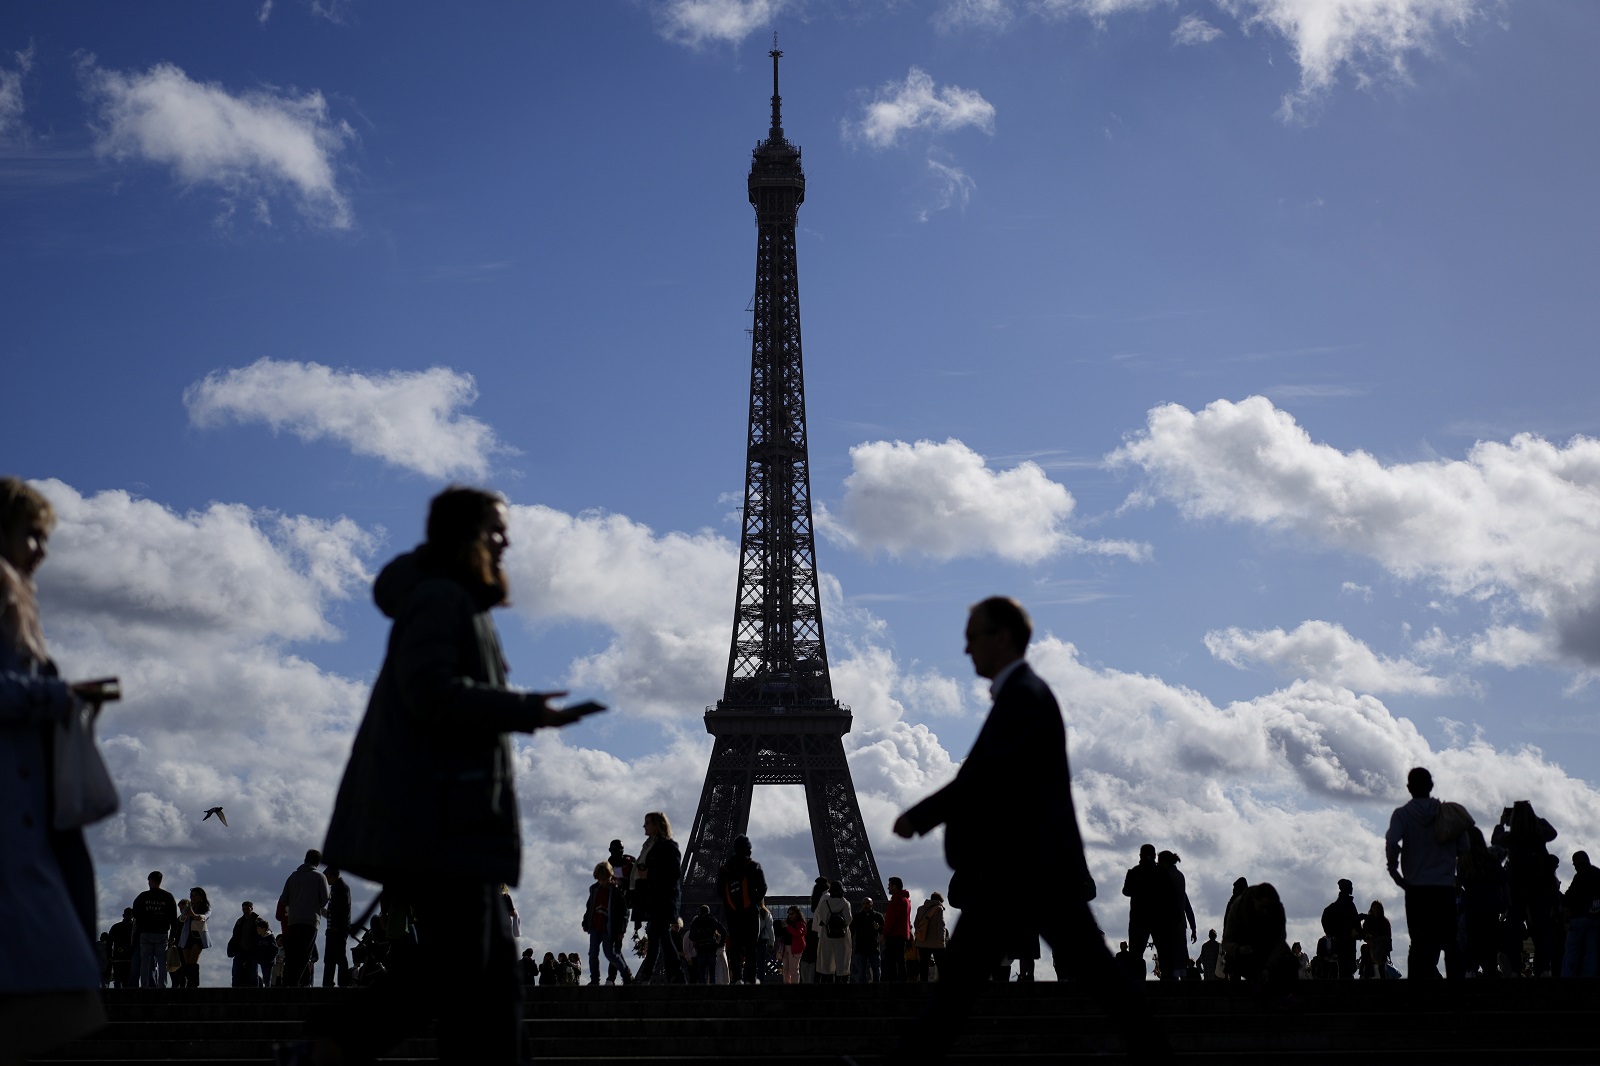 γαλλία: γυναίκα κατέρριψε το παγκόσμιο ρεκόρ αναρρίχησης, σκαρφαλώνοντας στον πύργο του άιφελ